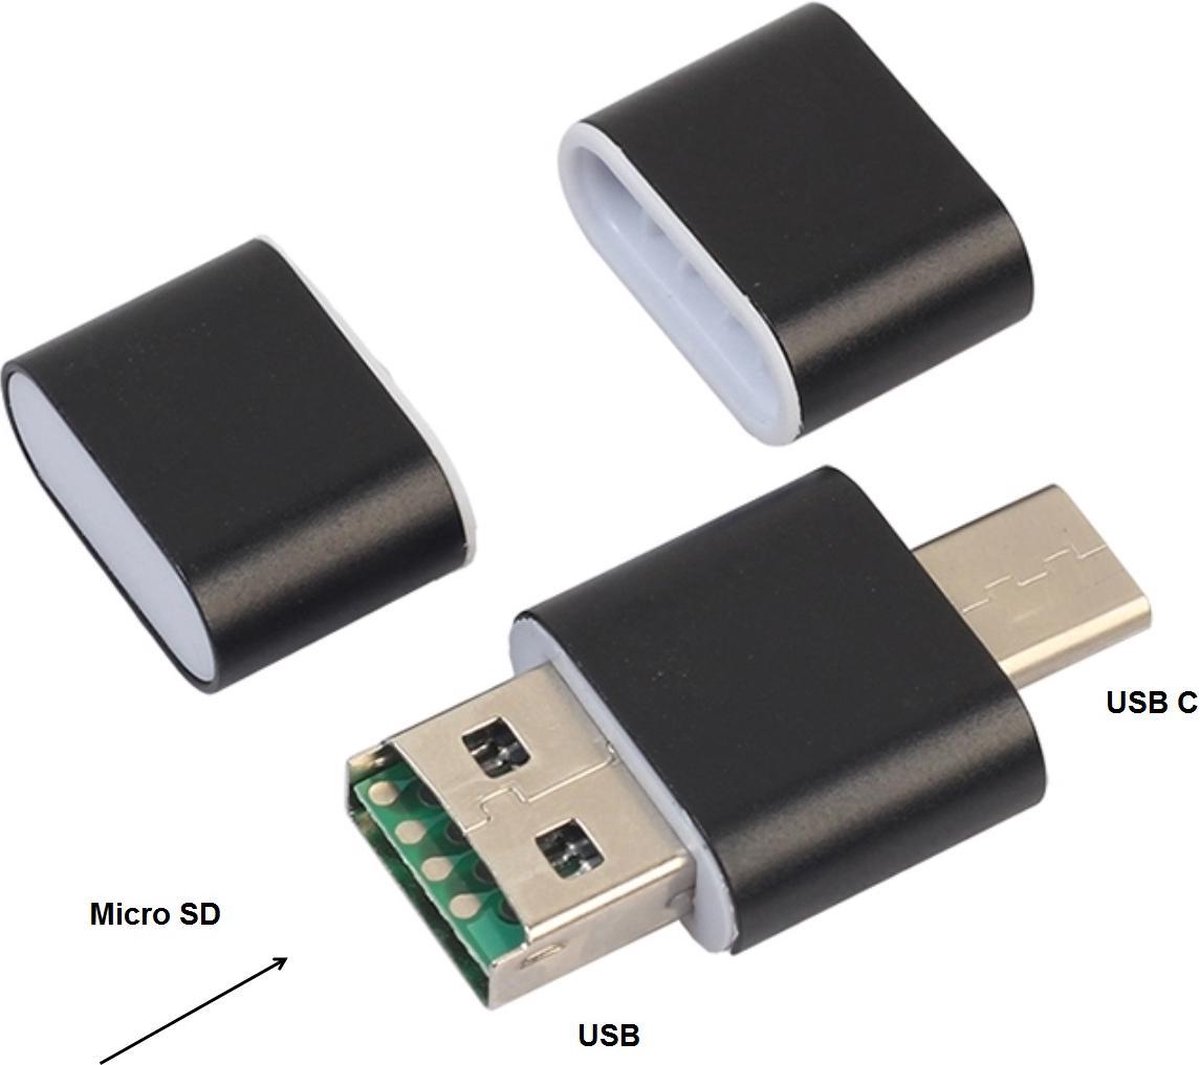 Multifunctionele USB Micro SD kaart lezer - USB naar USB C - Mini USB verloop naar USB C met SD card reader - Gadget network